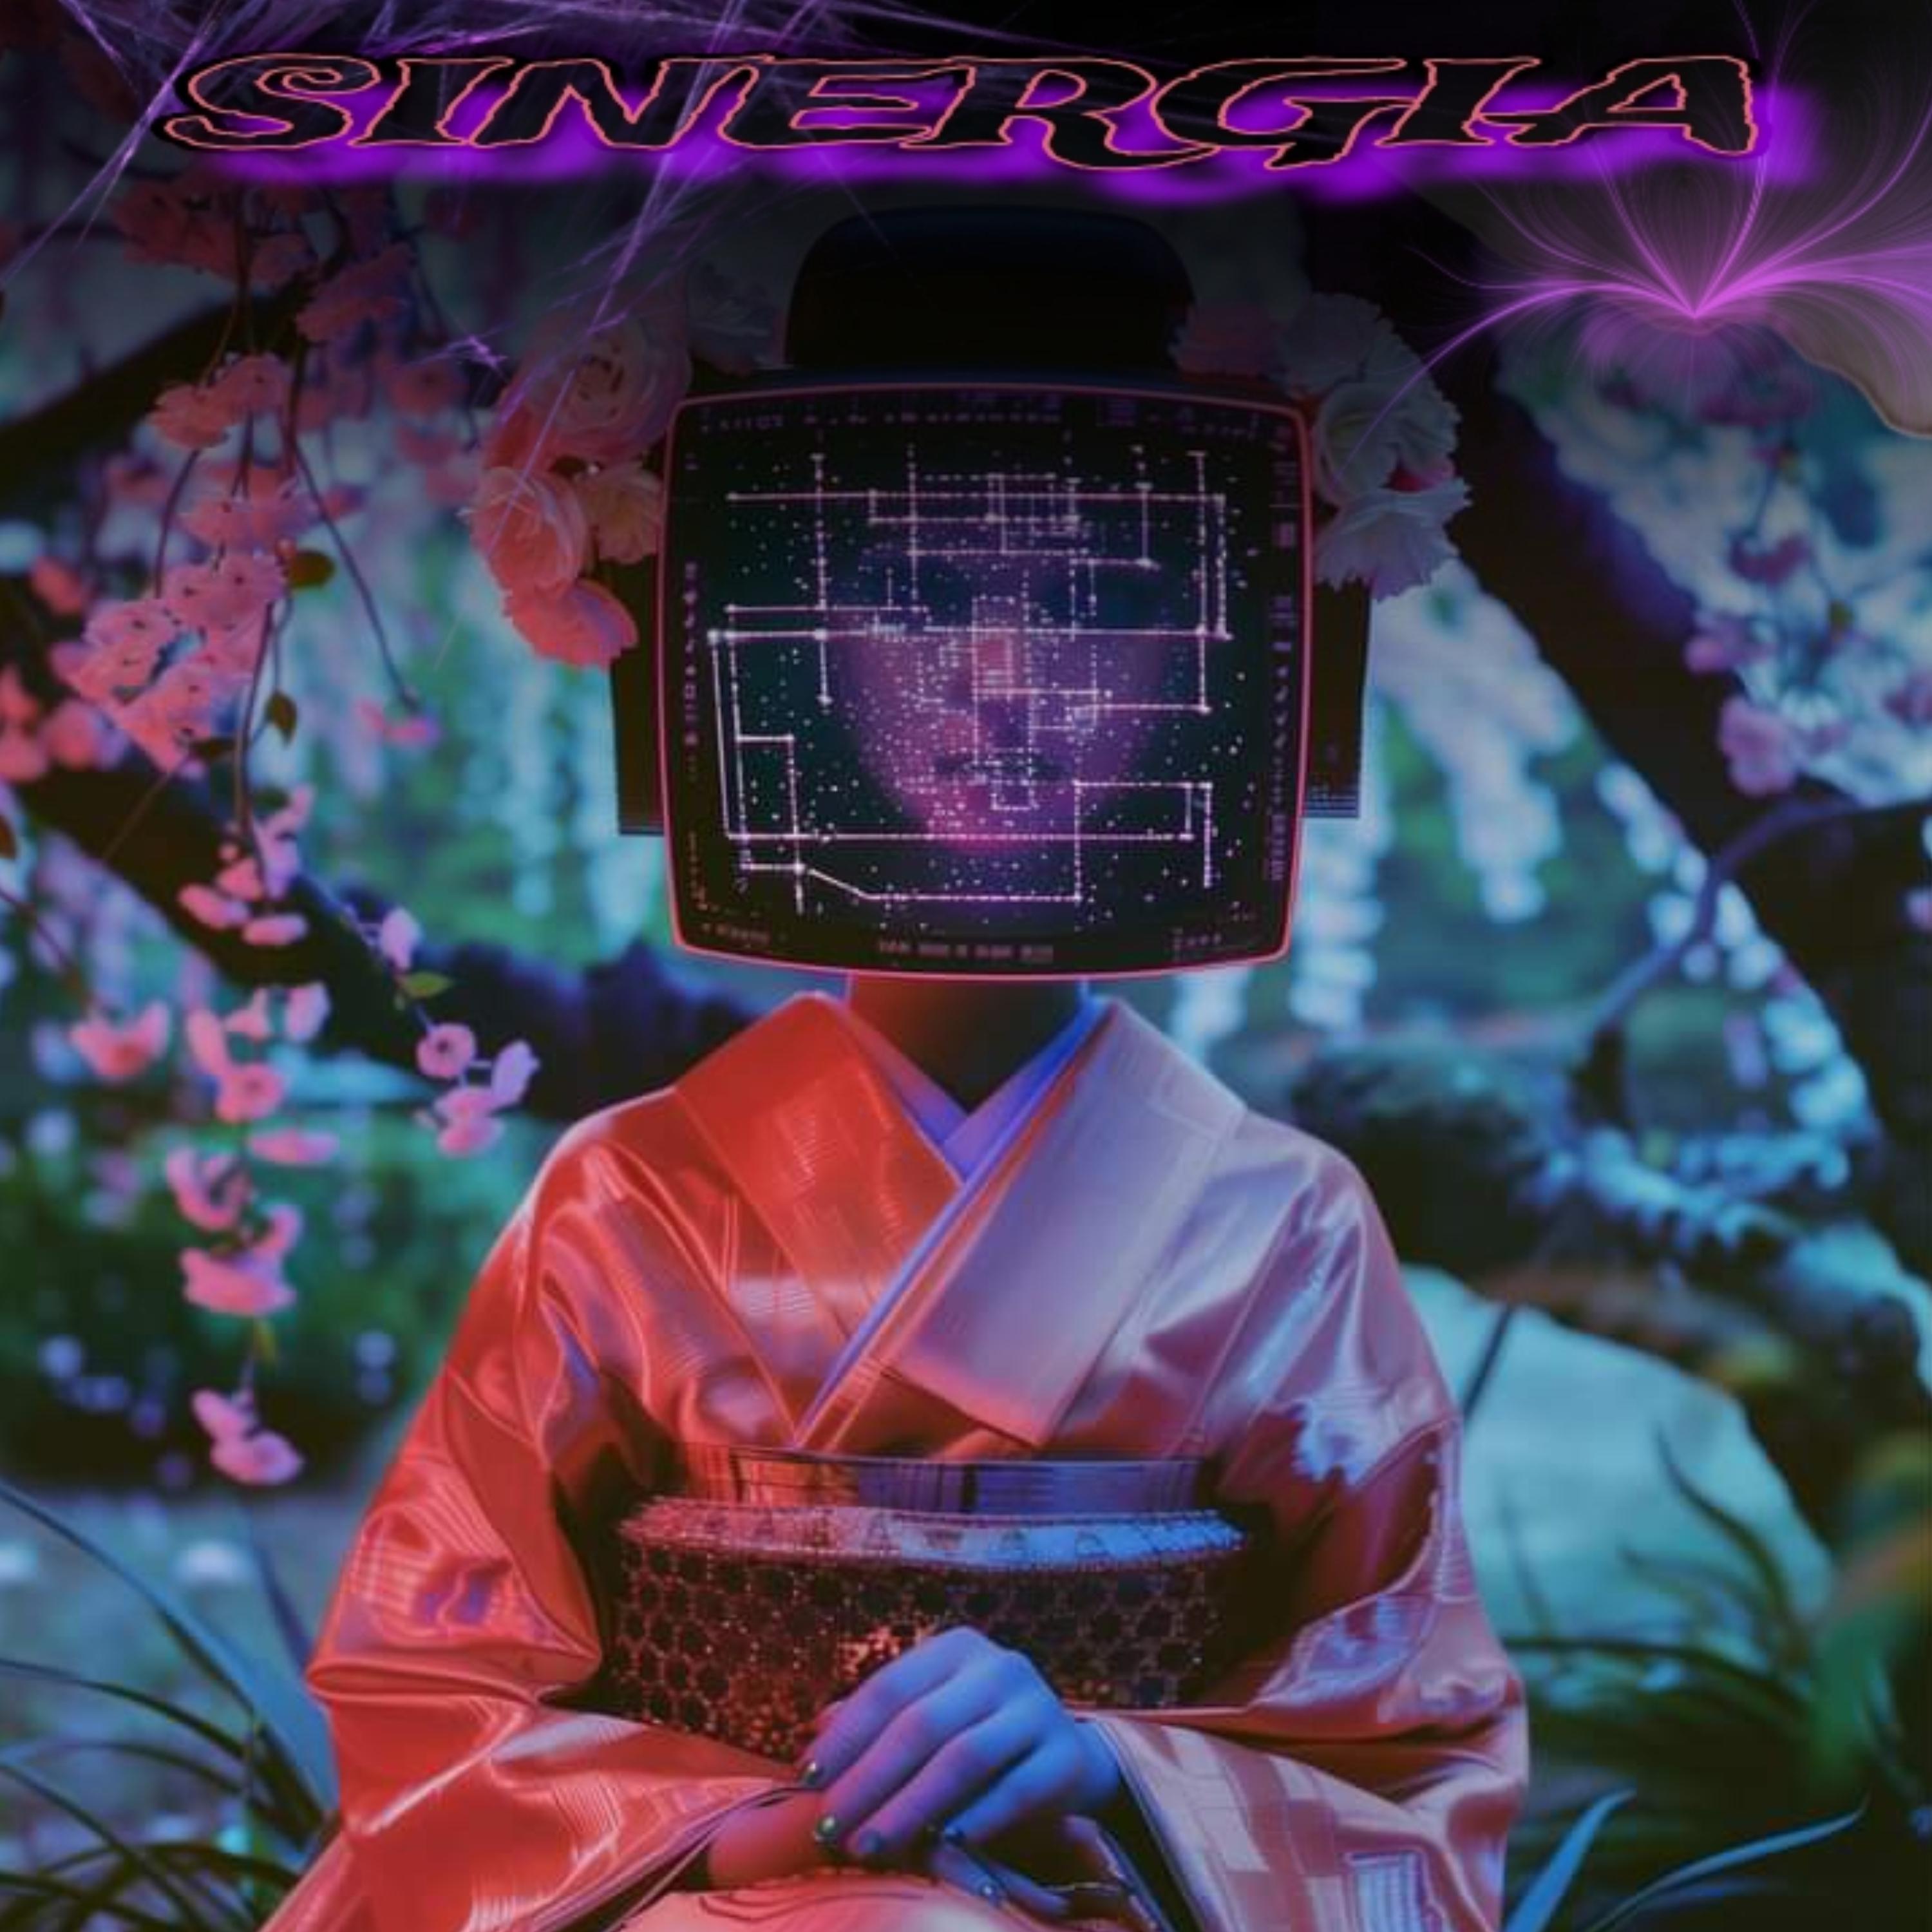 Постер альбома Sinergia